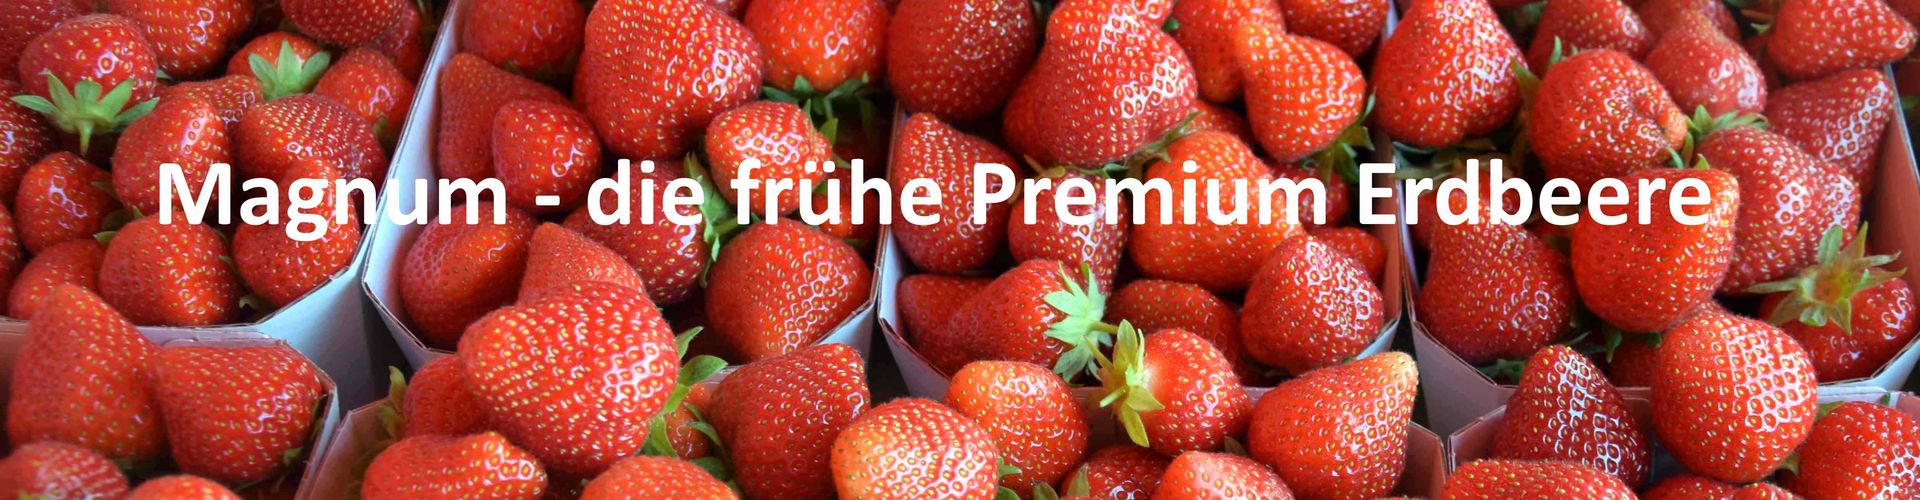 Magnum neue Erdbeersorte Geschmack Haltbarkeit Handel Direktvermarktung Erdbeere